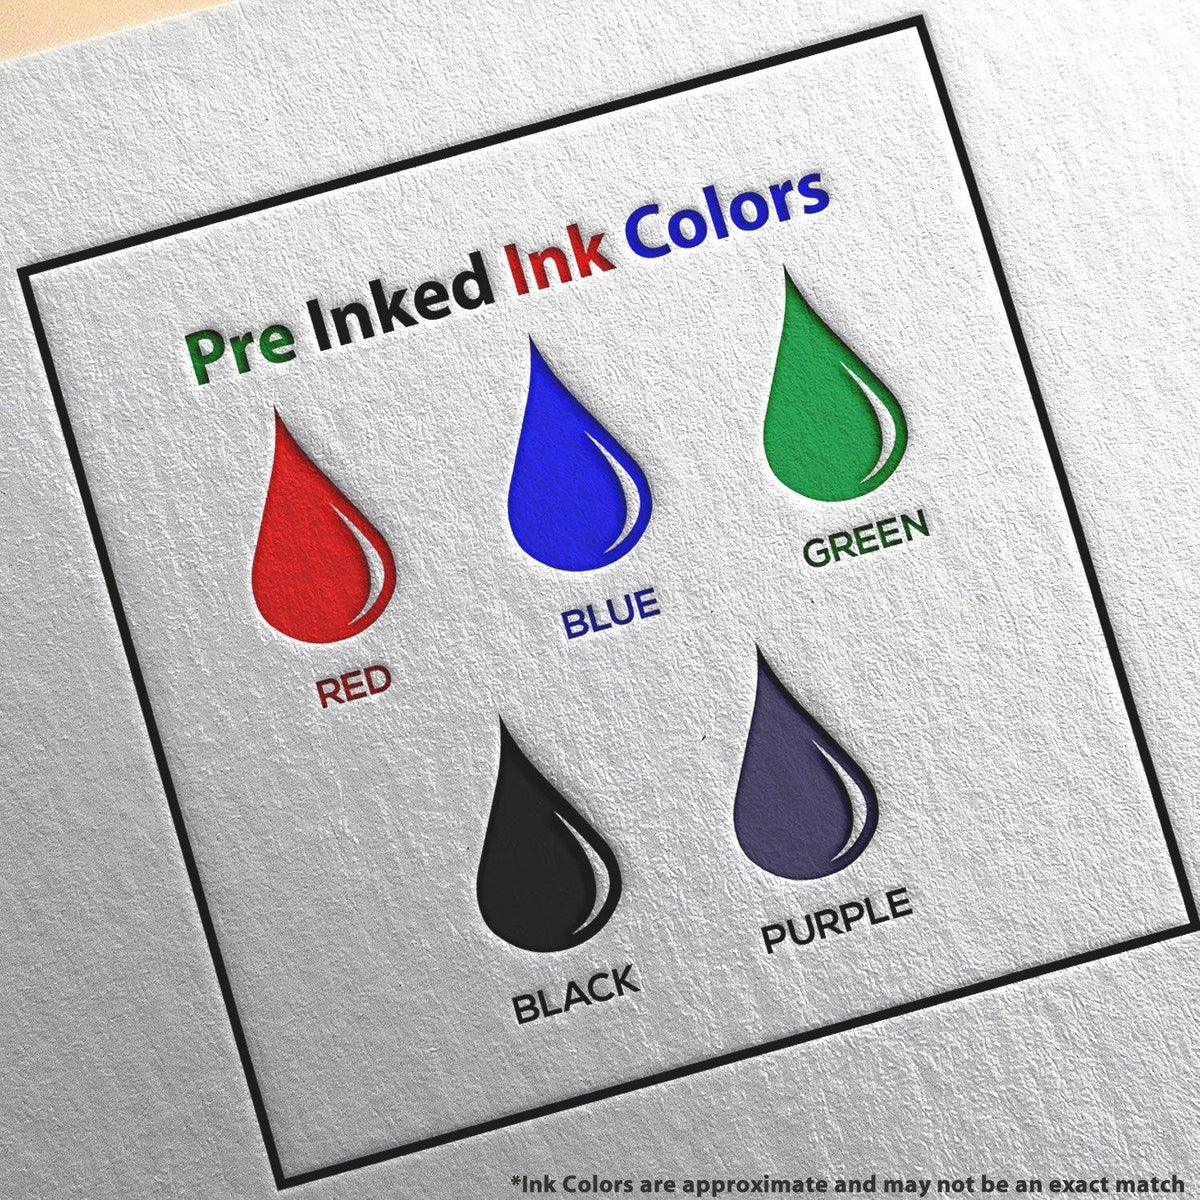 Slim Pre Inked Promoted Stamp Ink Color Options